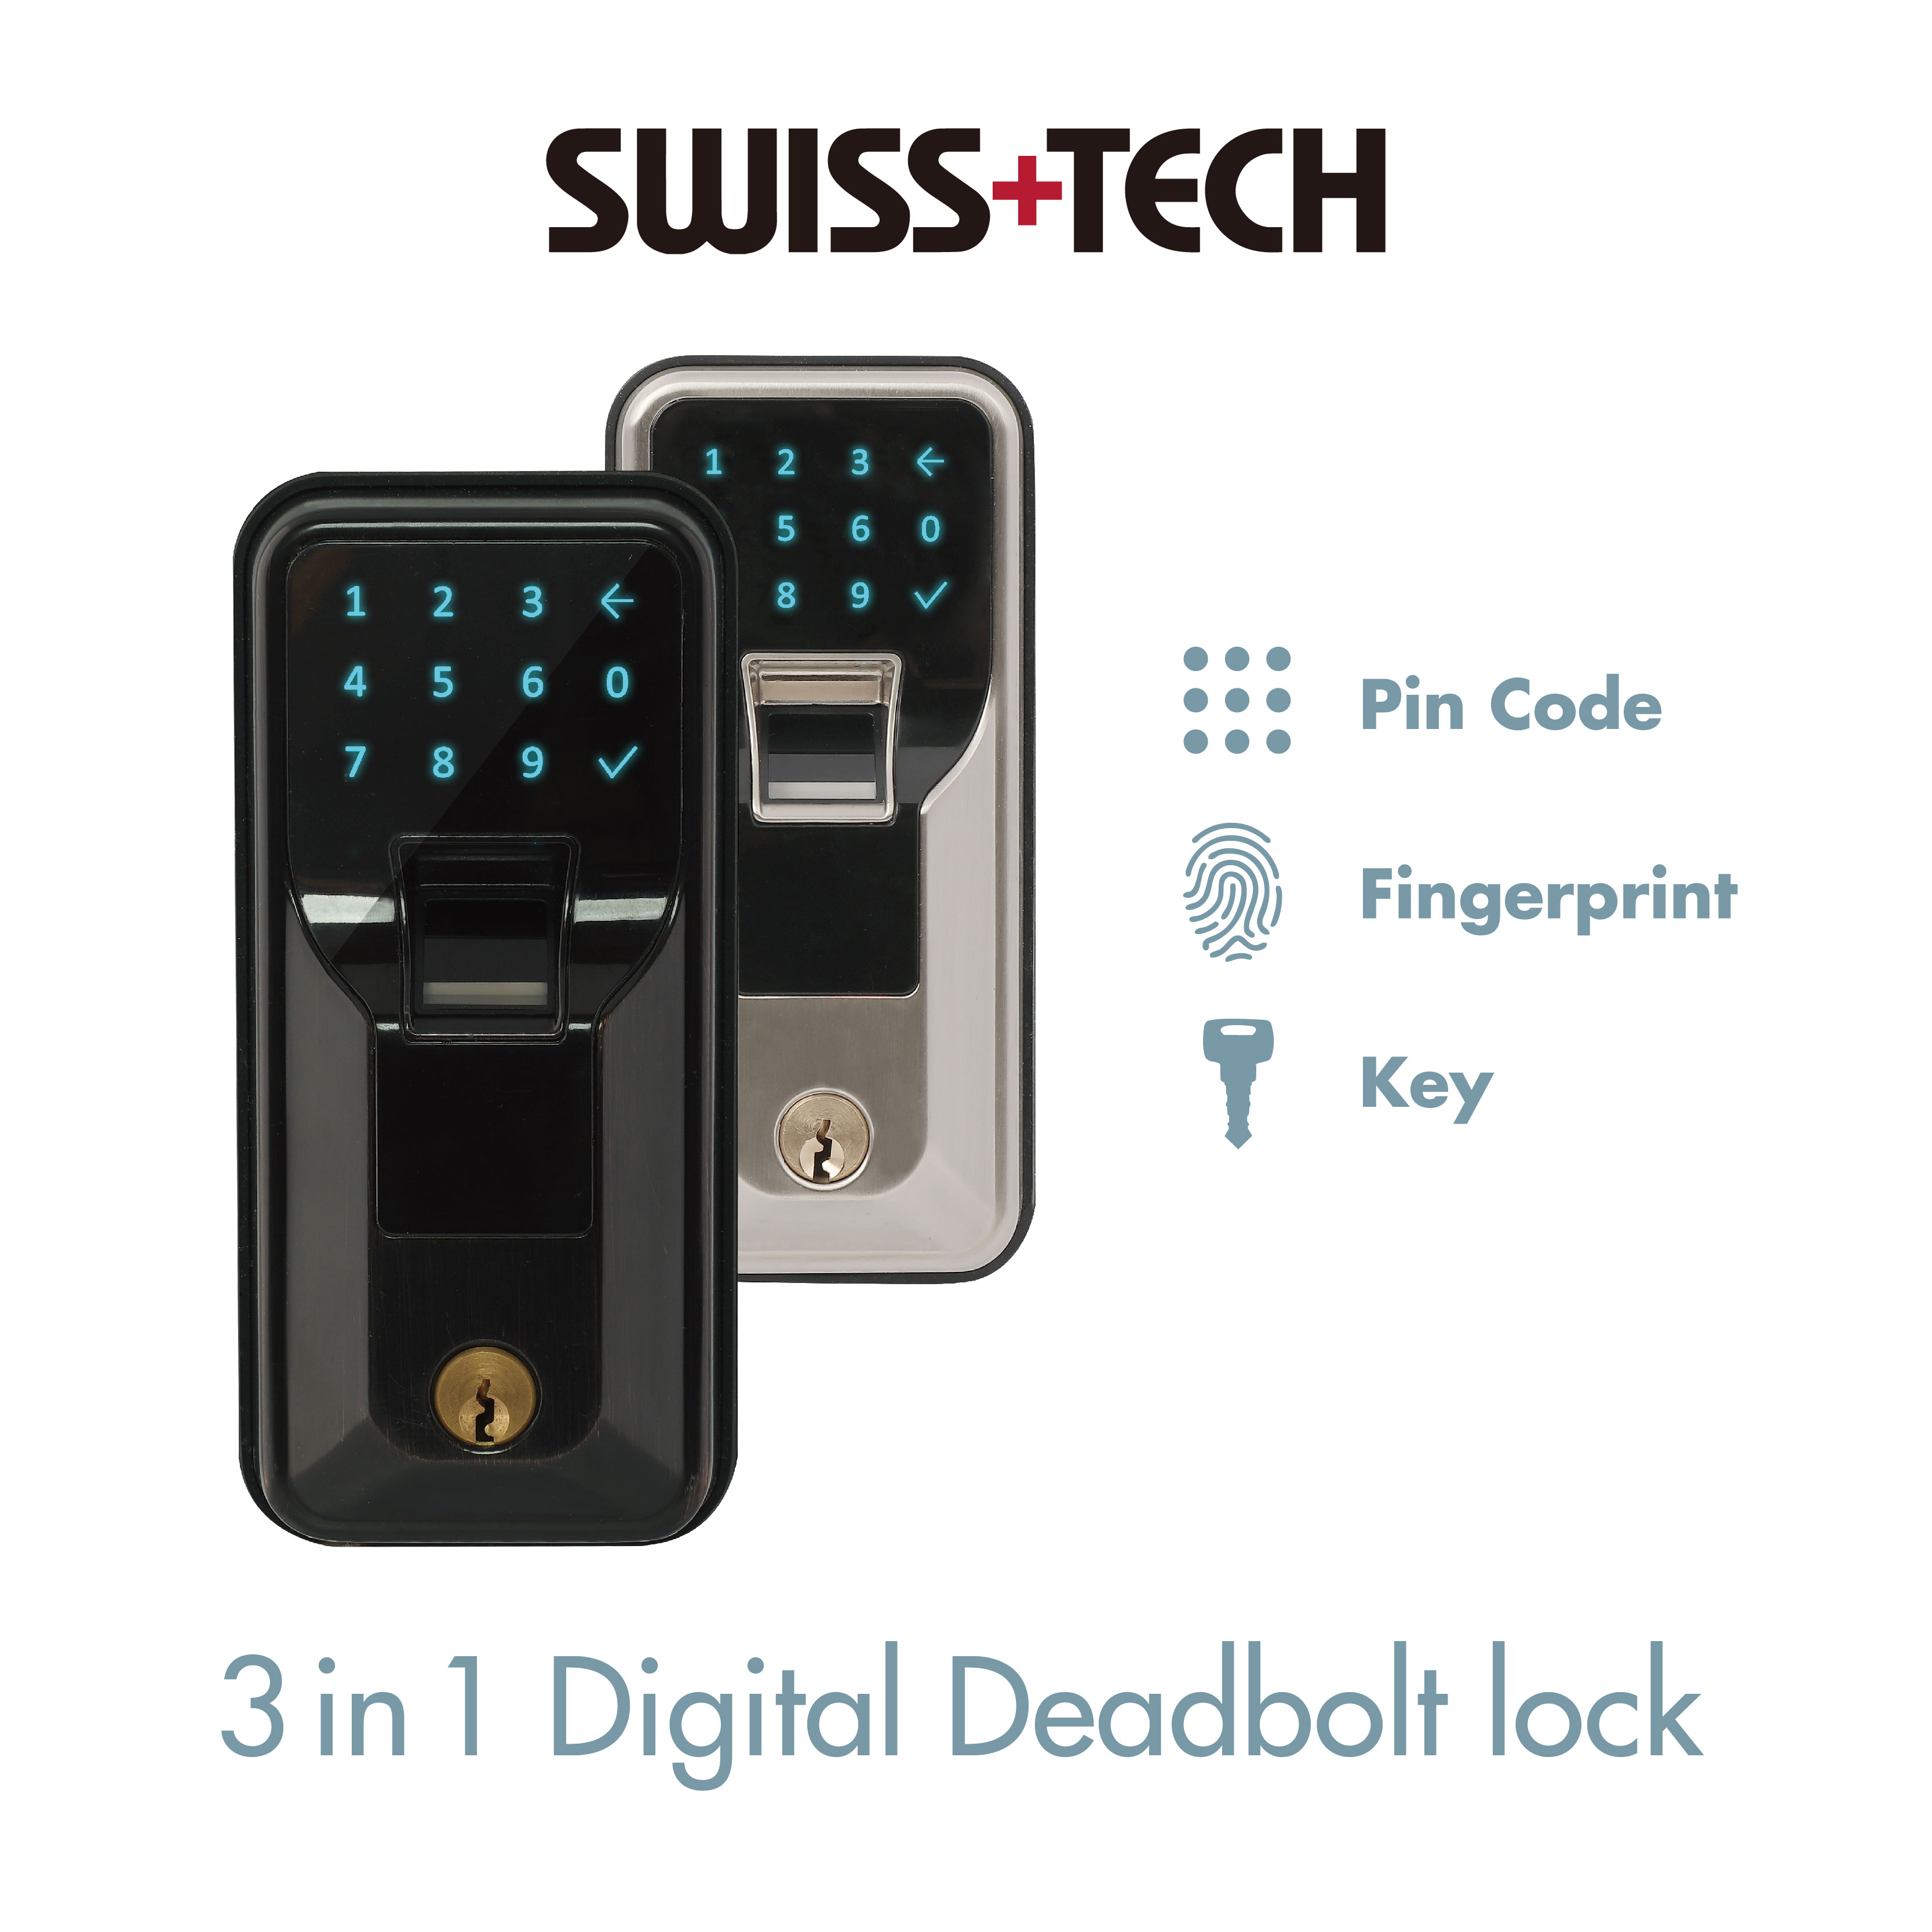 3 in 1 Digital Deadbolt lock